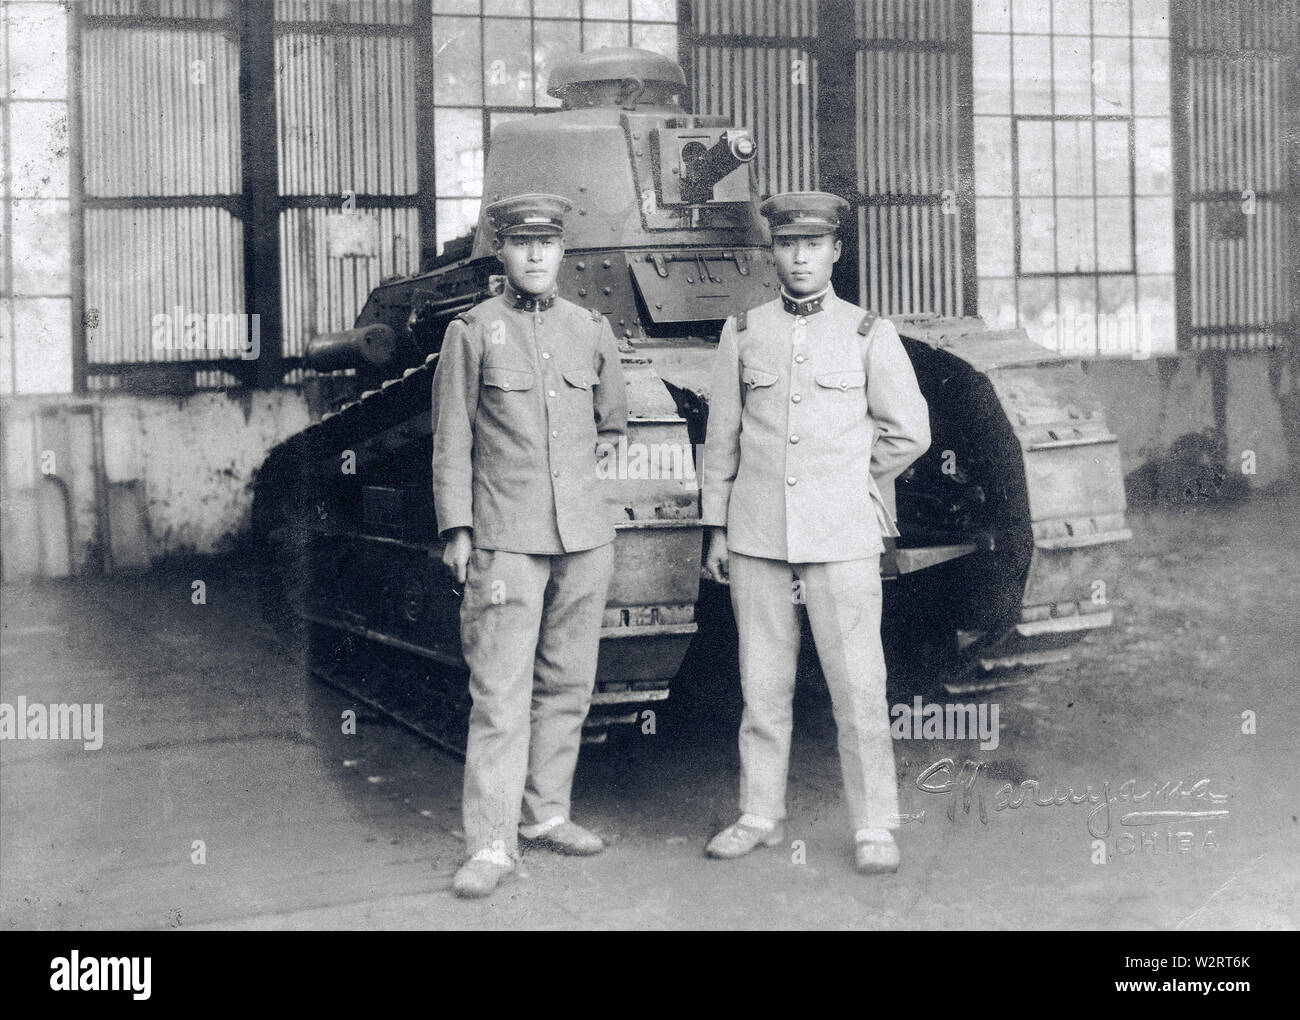 [ 1930 - Japon les soldats japonais et français Tank ] - Deux soldats japonais se tenir en face d'un français Renault FT-17 light infantry tank, l'un des modèles de citernes les plus révolutionnaires de l'histoire. Le Japon a importé 13 FT-17 en 1919 (Taisho 8), qui ont été utilisées dans l'Incident de Mandchourie (1931-1932) et pour la formation. Les Français ont été remplacées par l'armement japonais. 20e siècle Tirage argentique d'époque. Banque D'Images